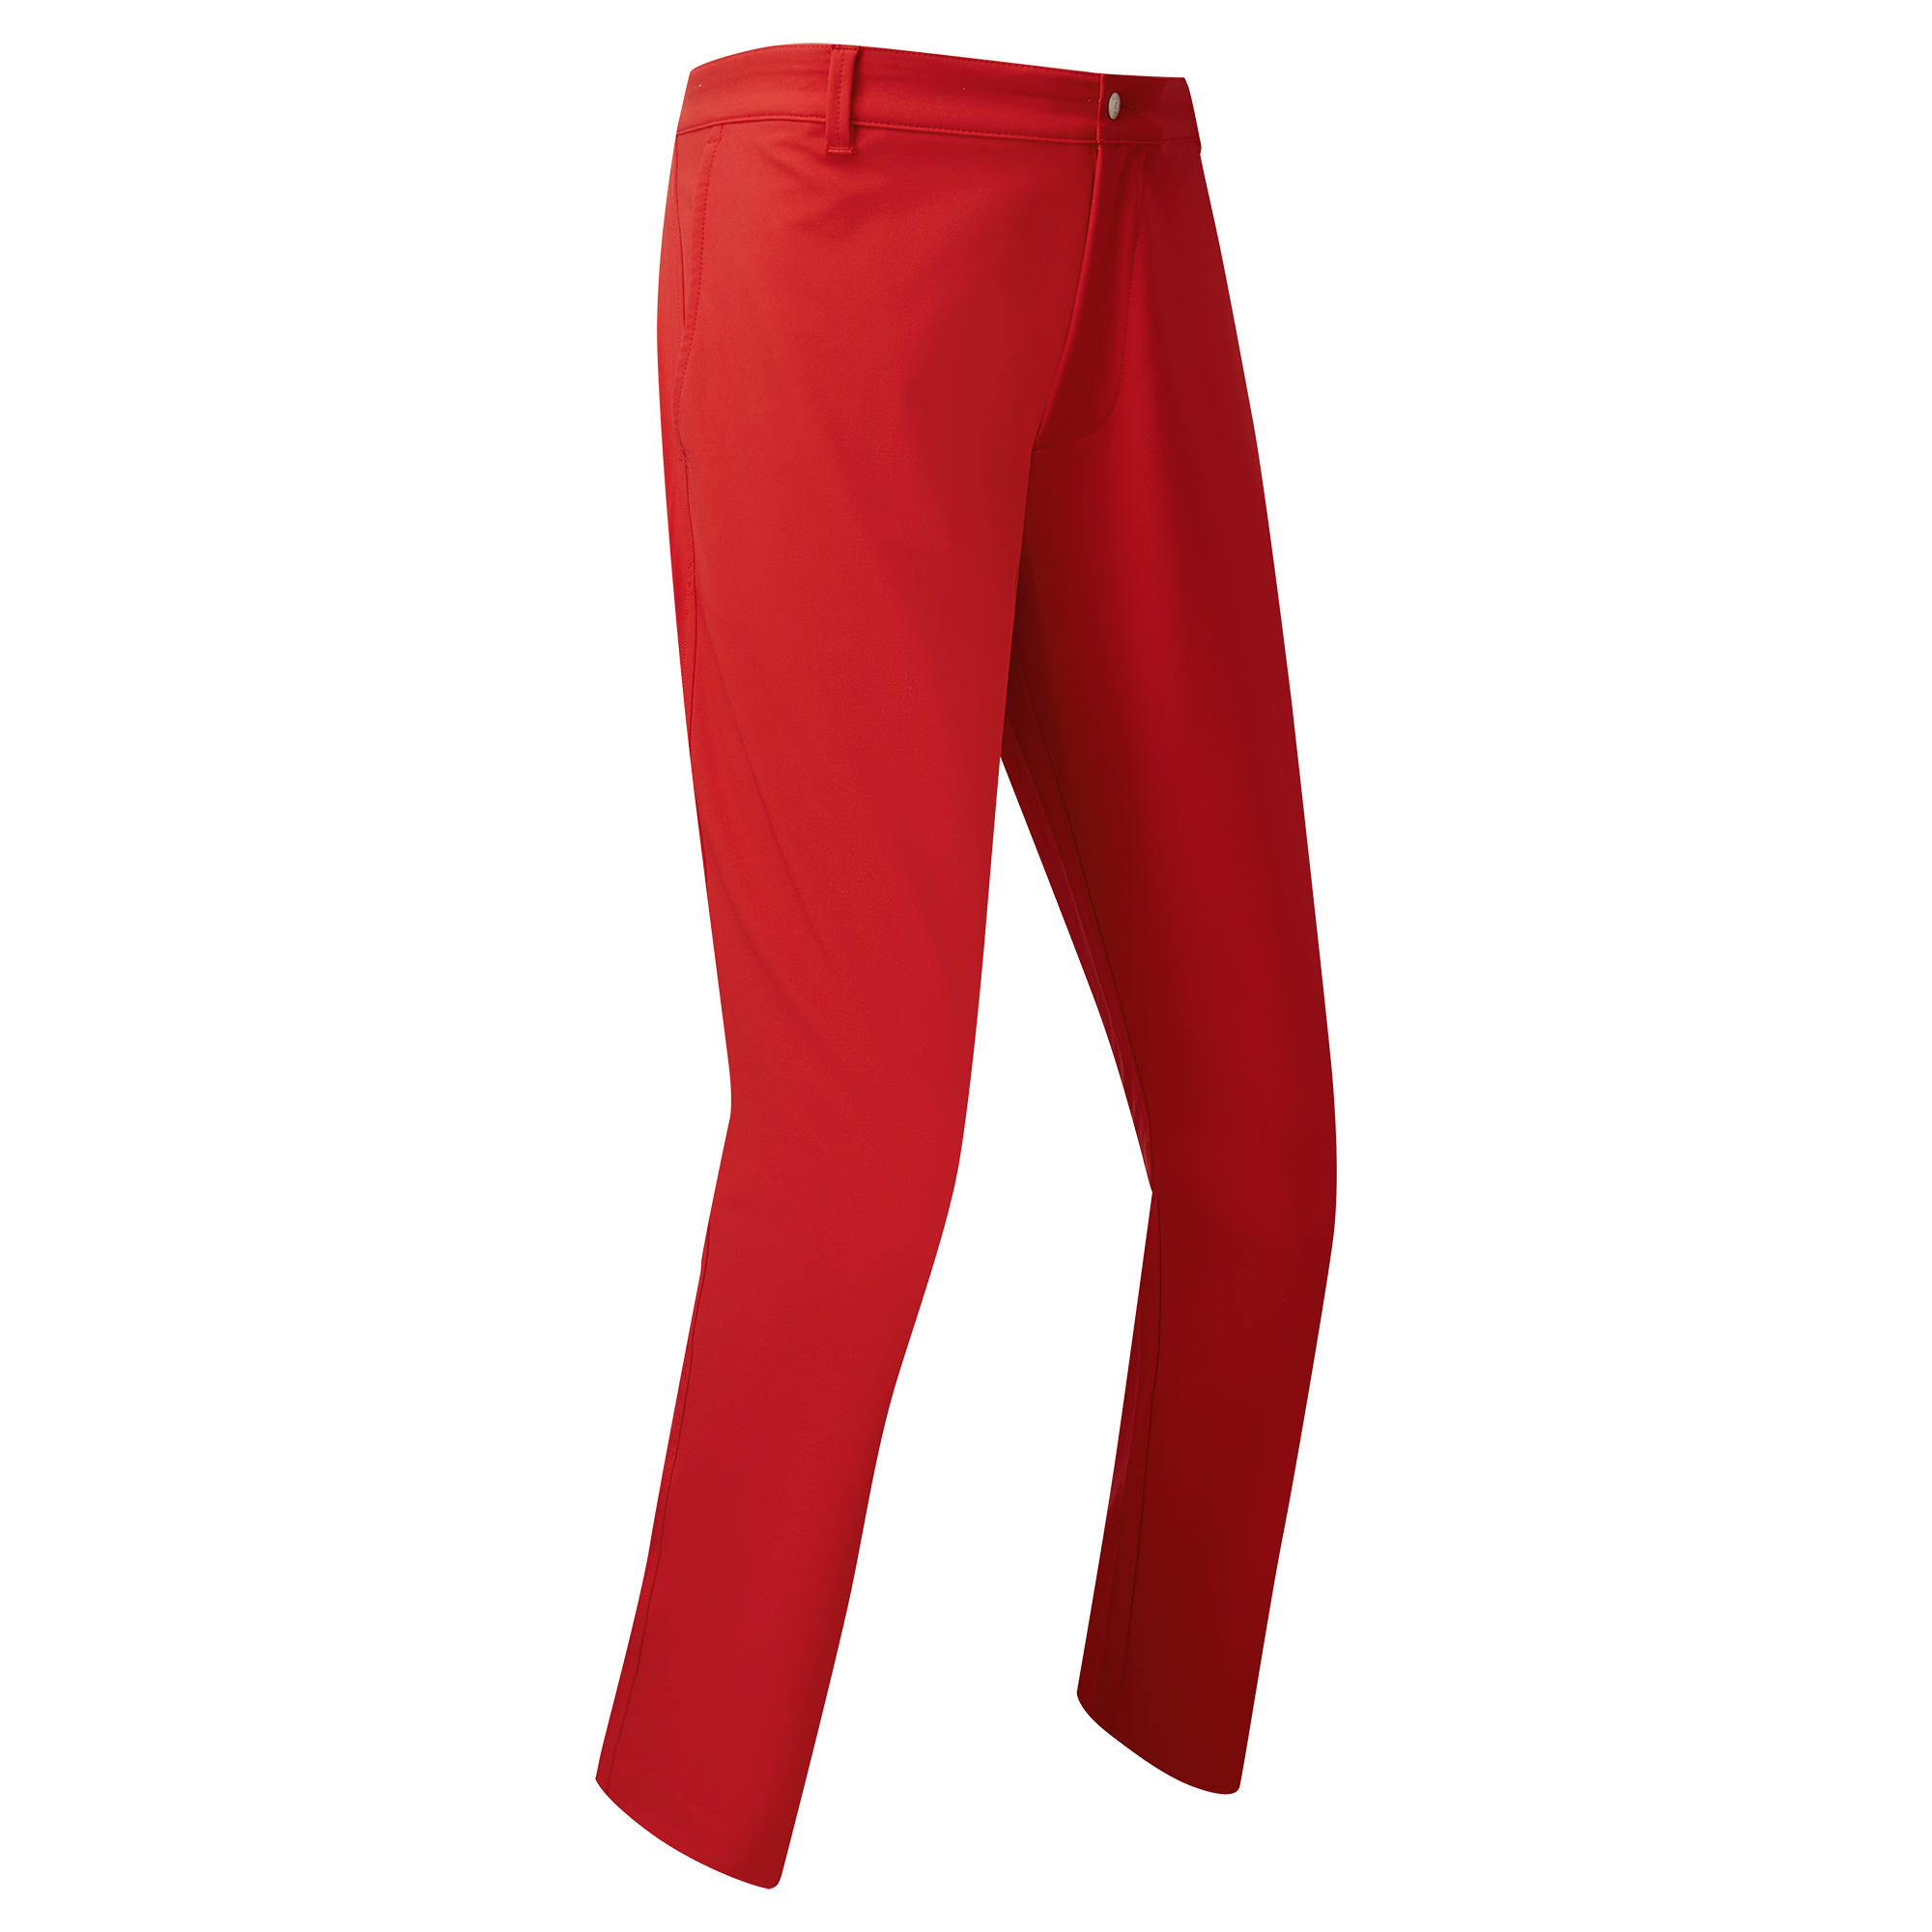 FootJoy Performance Tapered Fit pánské golfové kalhoty, červené, vel. 36/32